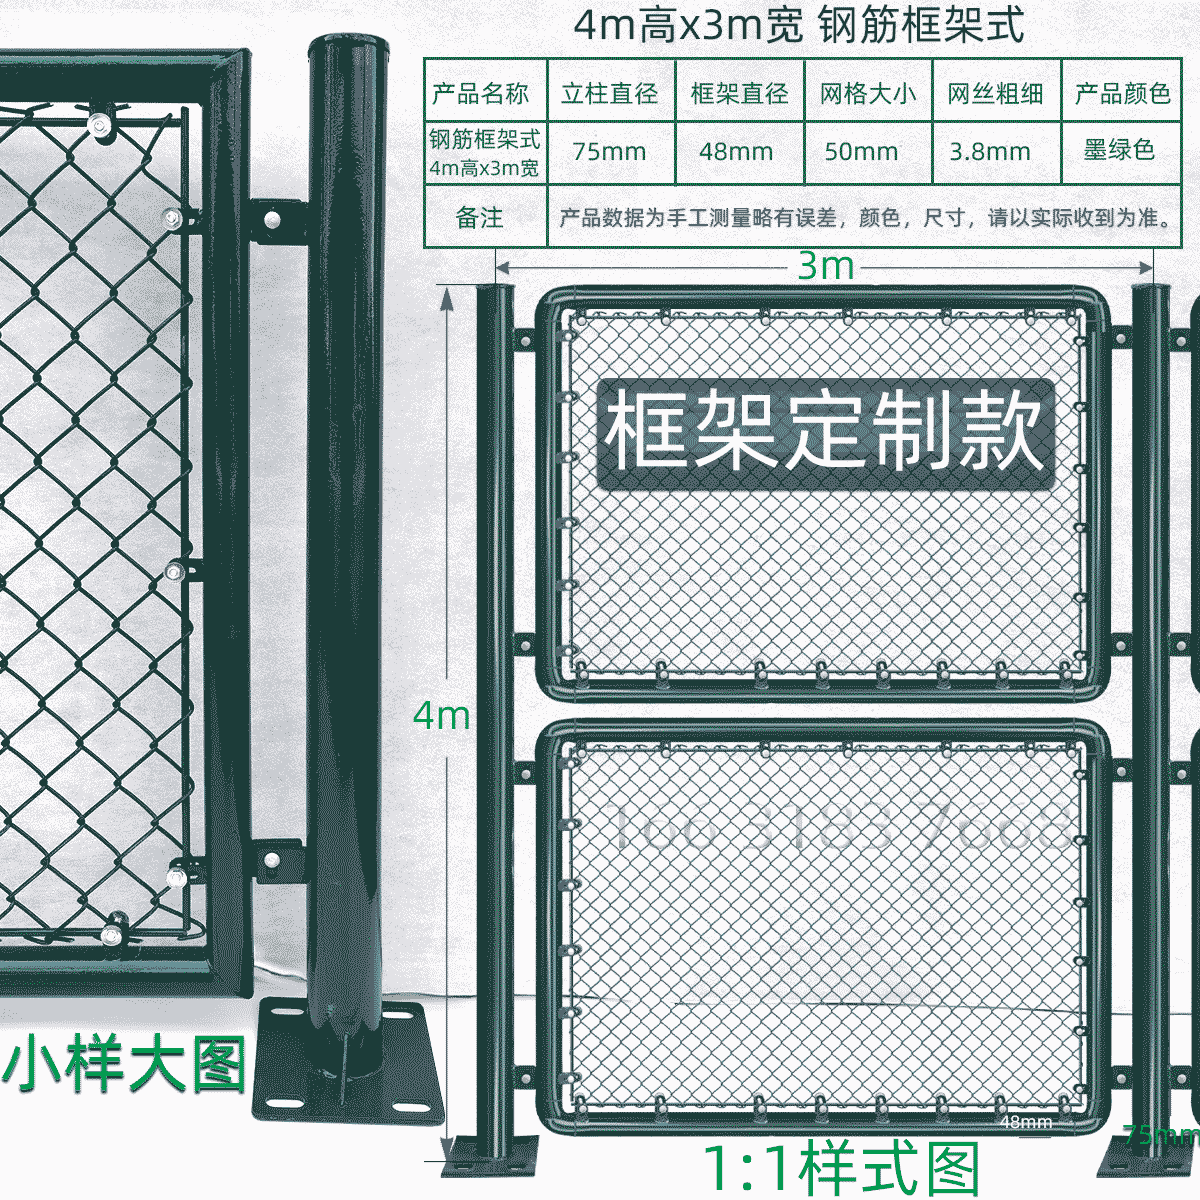 4m高x3m宽钢筋组装框架式球场围栏网